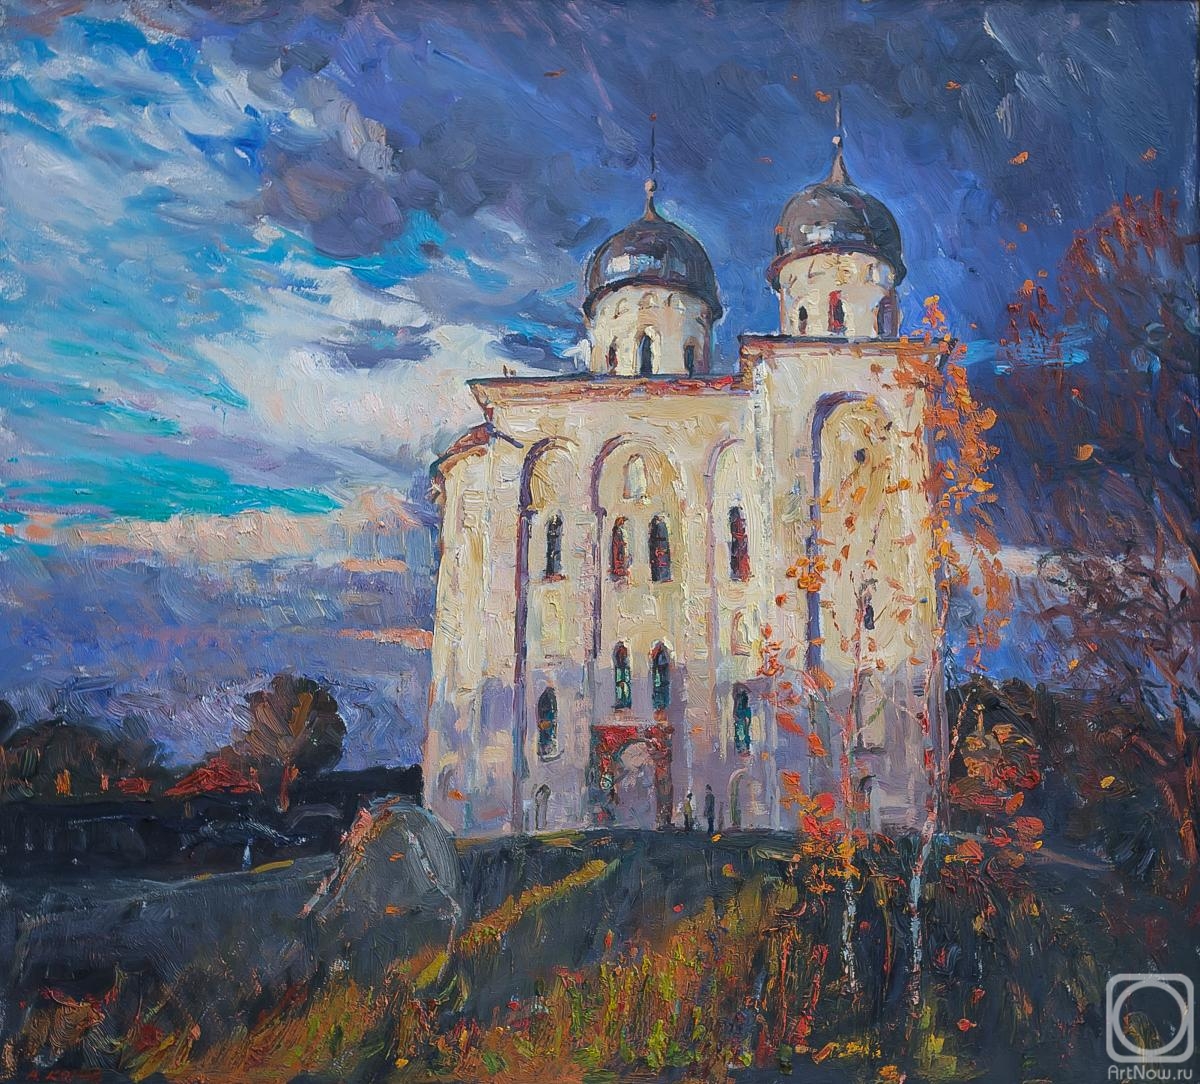 Komov Alexey. Veliky Novgorod. The autumn in Yurievo